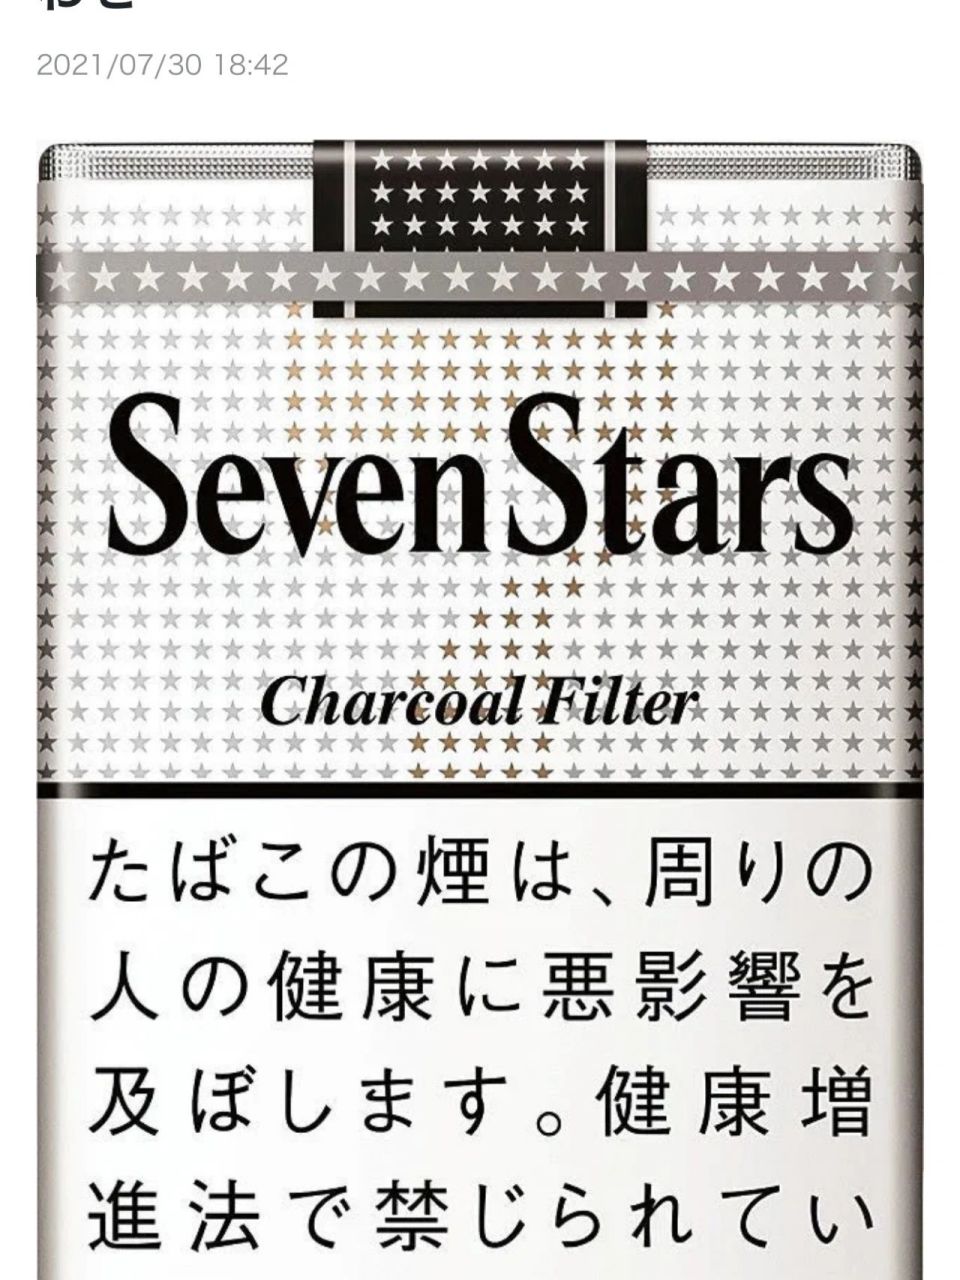 香烟的价格进化史 刚来日本时,sevenstar 250円 一包,现在600円一包